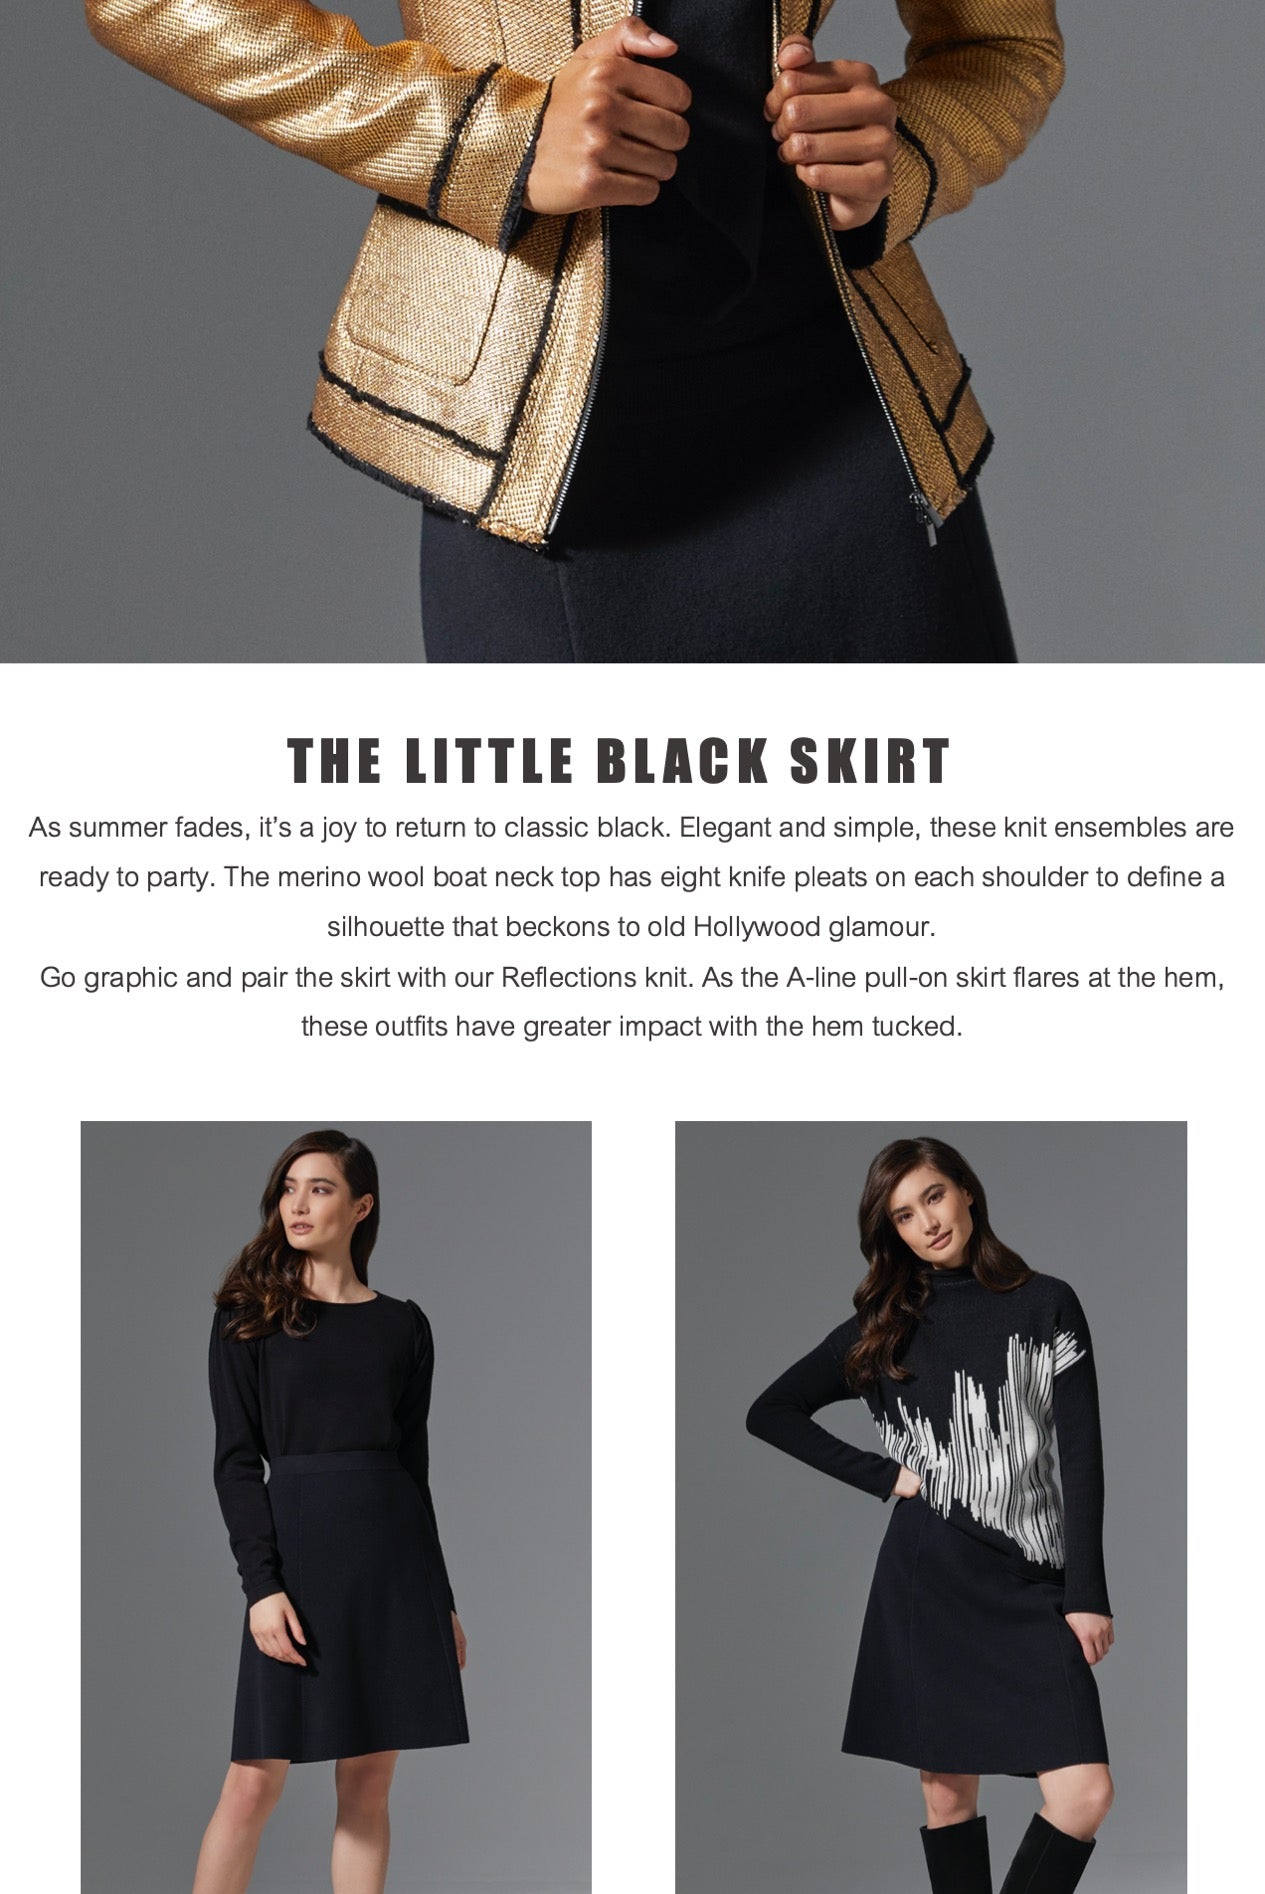 The Little Black Skirt